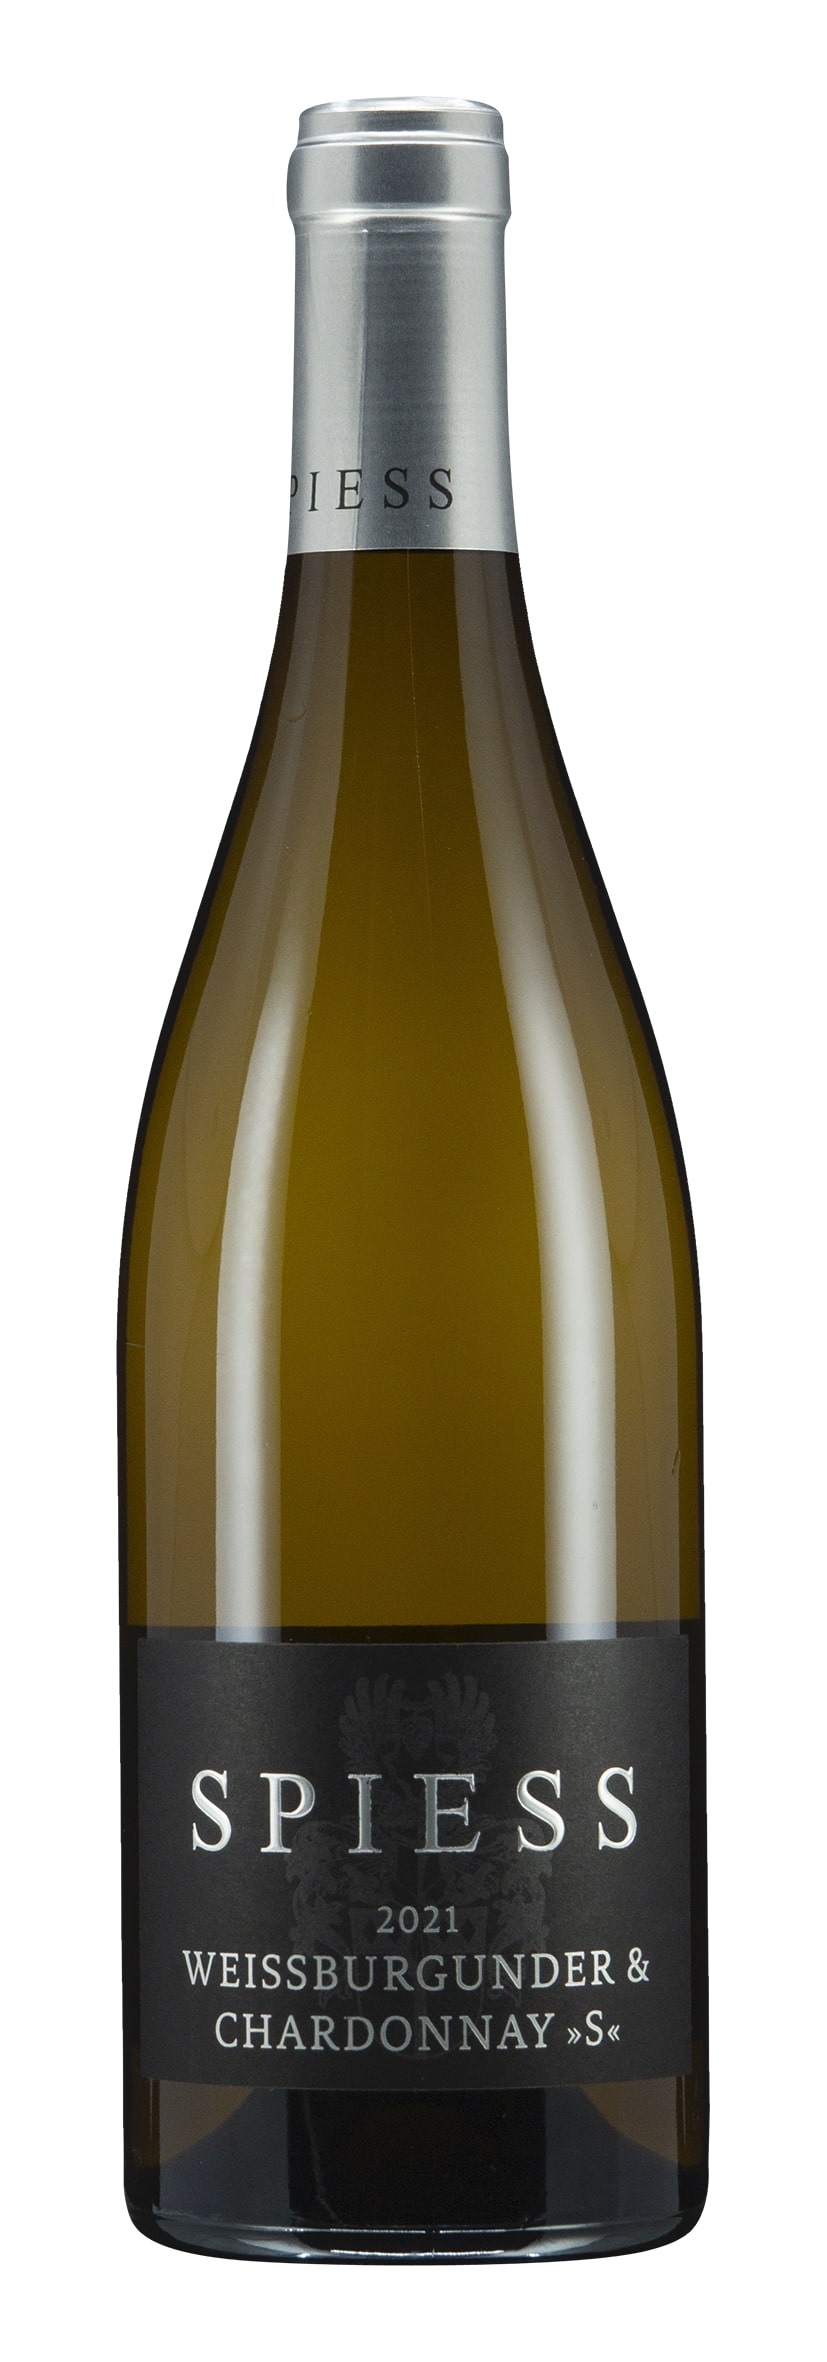 Weissburgunder & Chardonnay "S" 2021